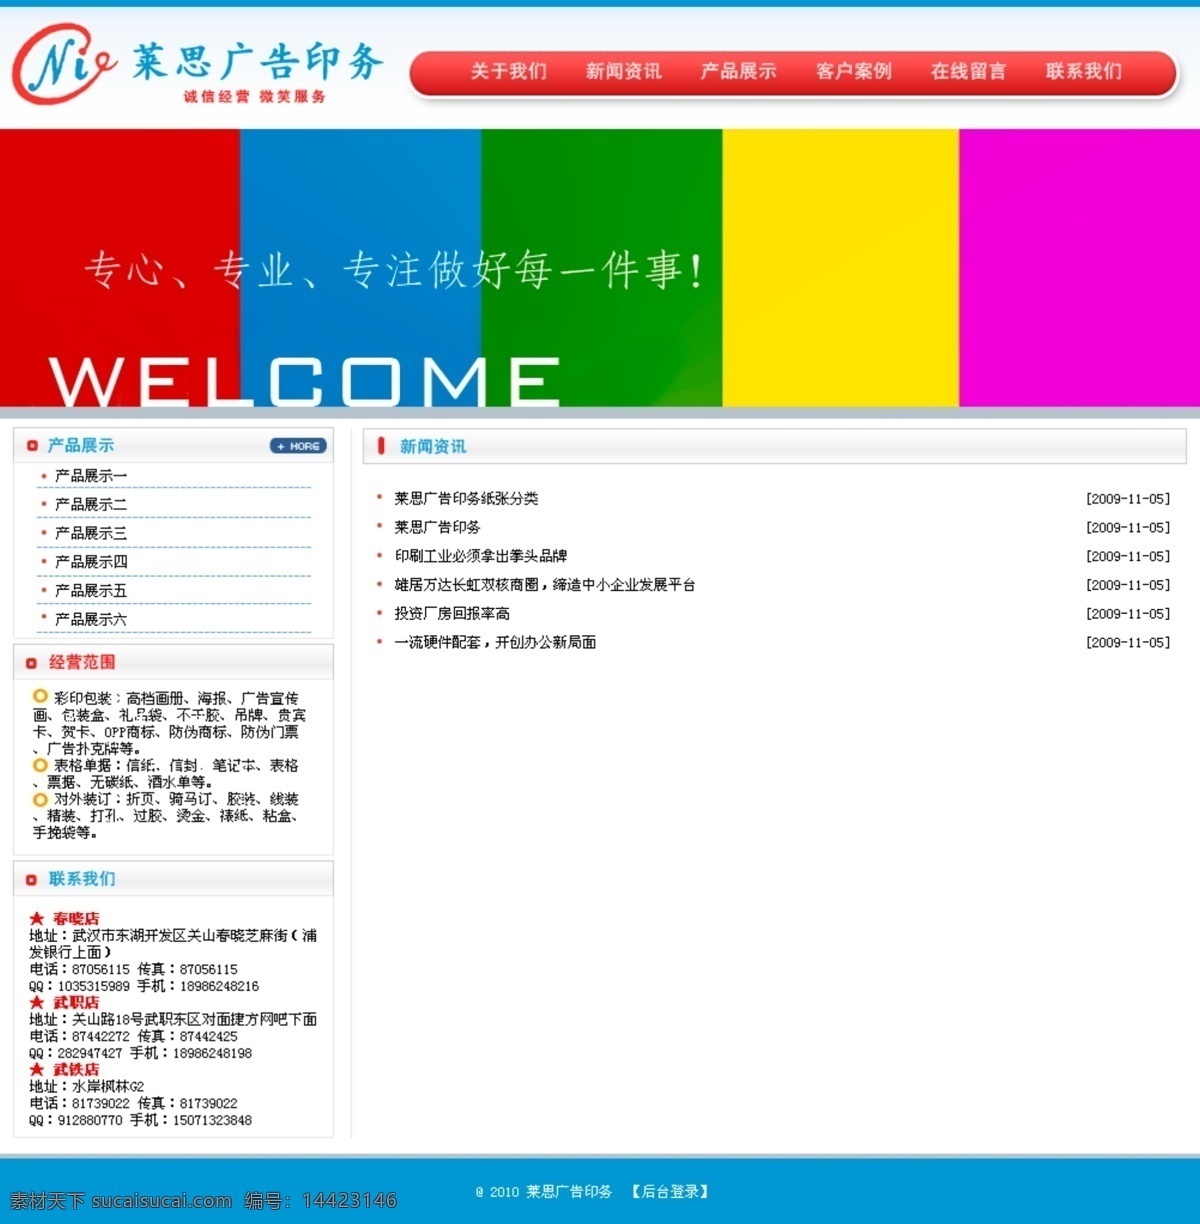 科技 网页 网页模板 信息 源文件 中文模板 广告 行业 广告行业网页 印刷行业网页 网页素材